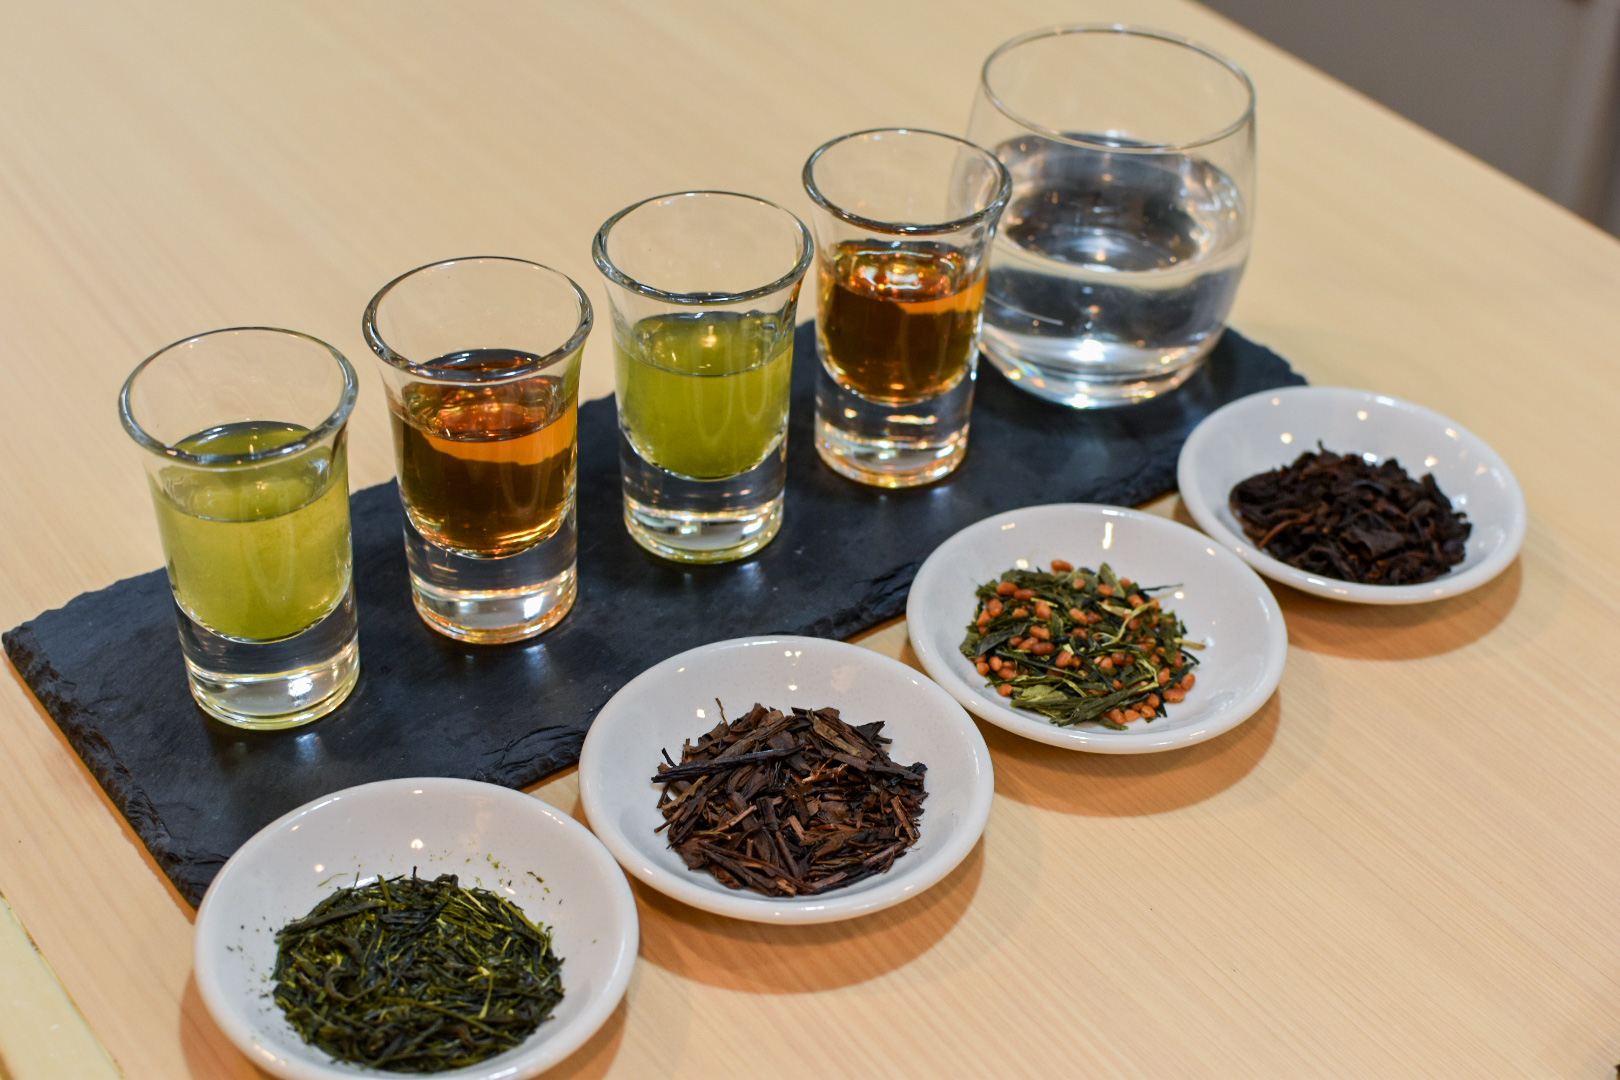 日本茶専門店 matchatrip の「日本茶 10 種飲み比べ」体験🍵 発売開始！